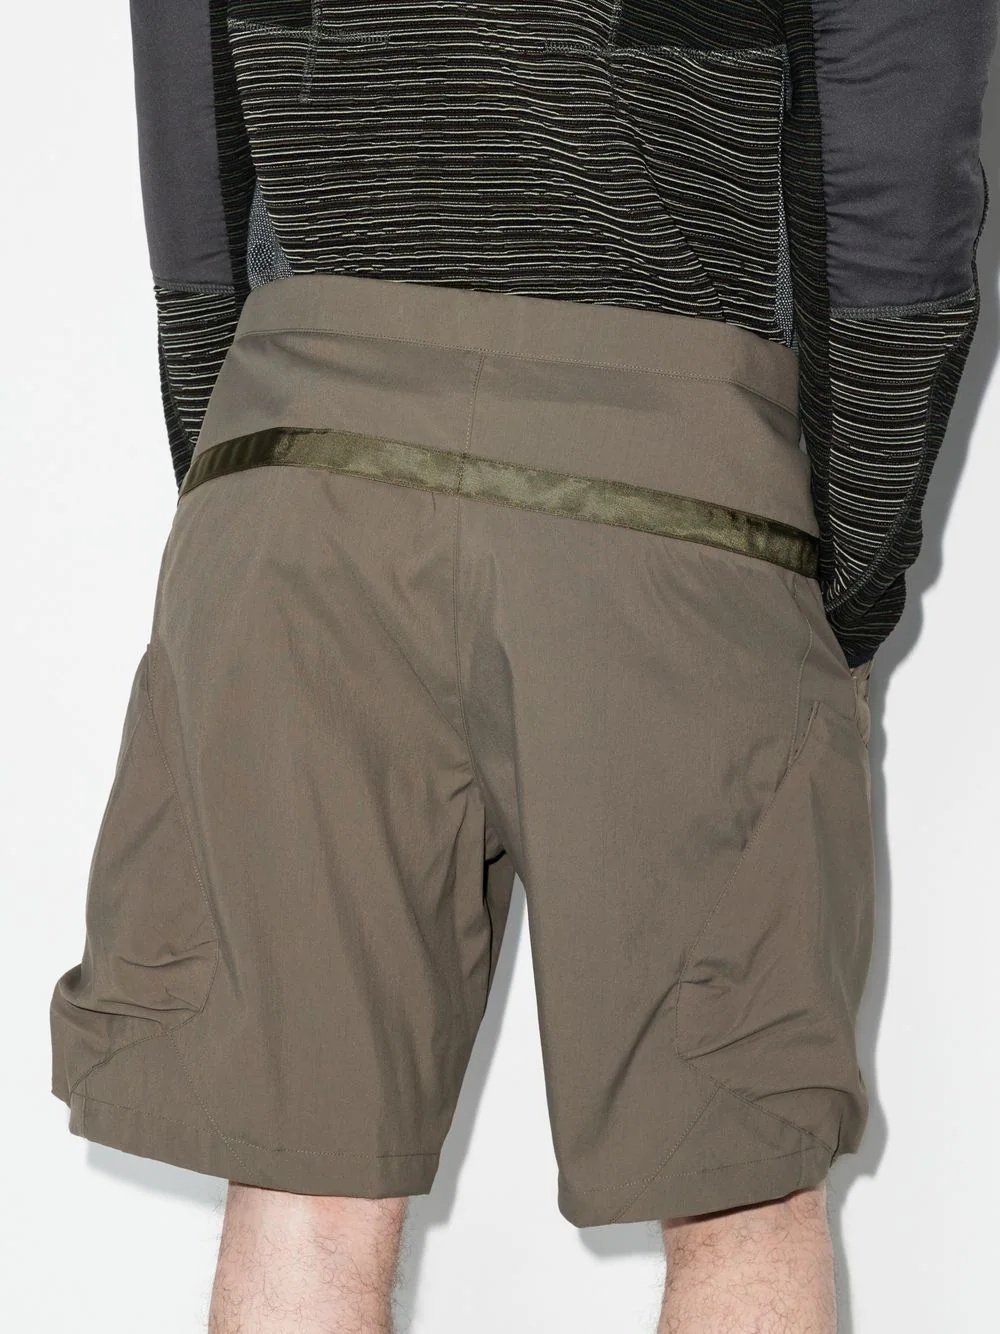 Encapsulated cargo shorts - 3